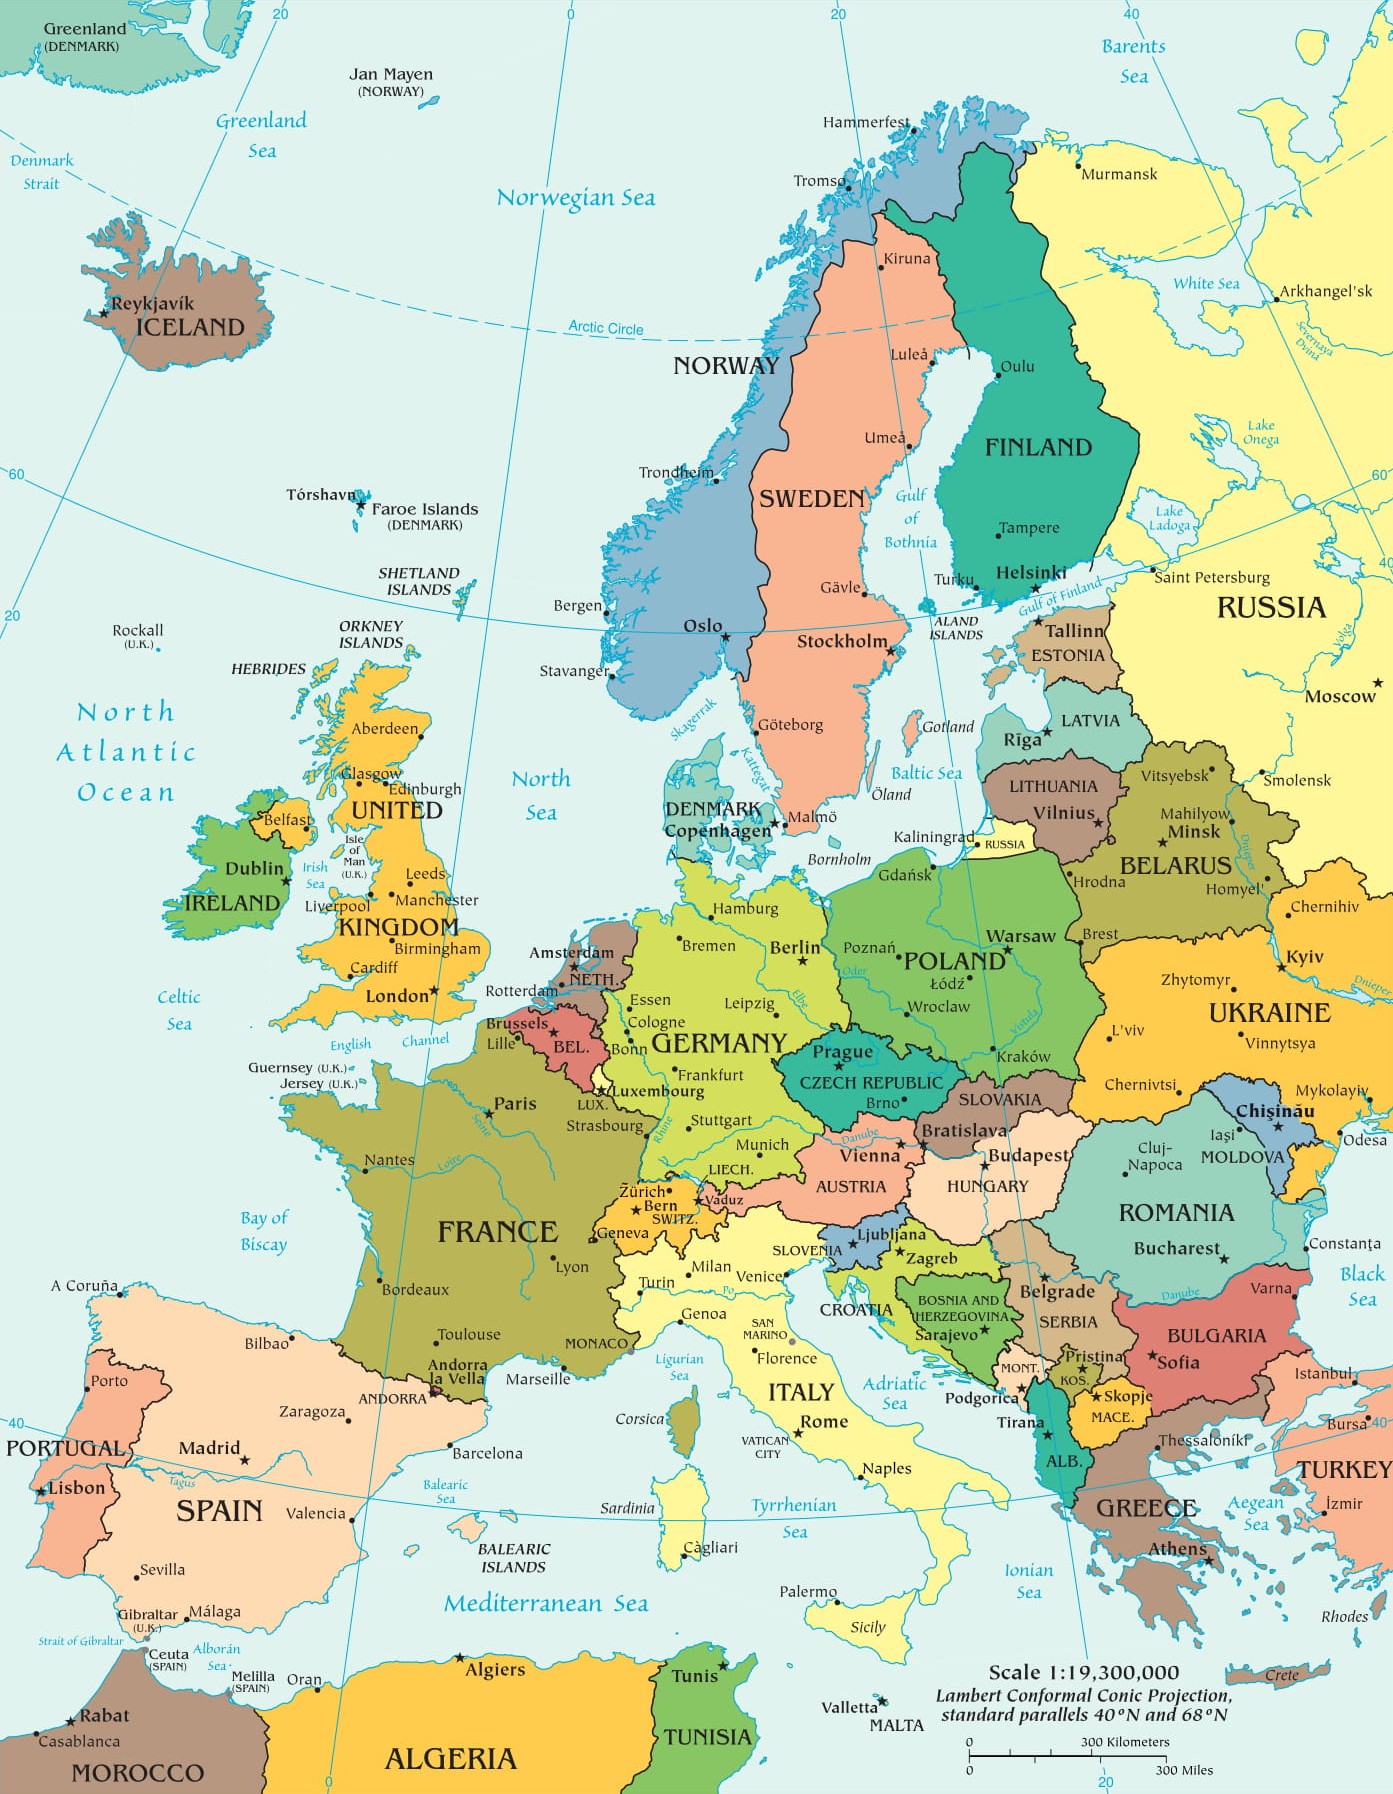 Escandinávia: países, mapa e curiosidades - Toda Matéria